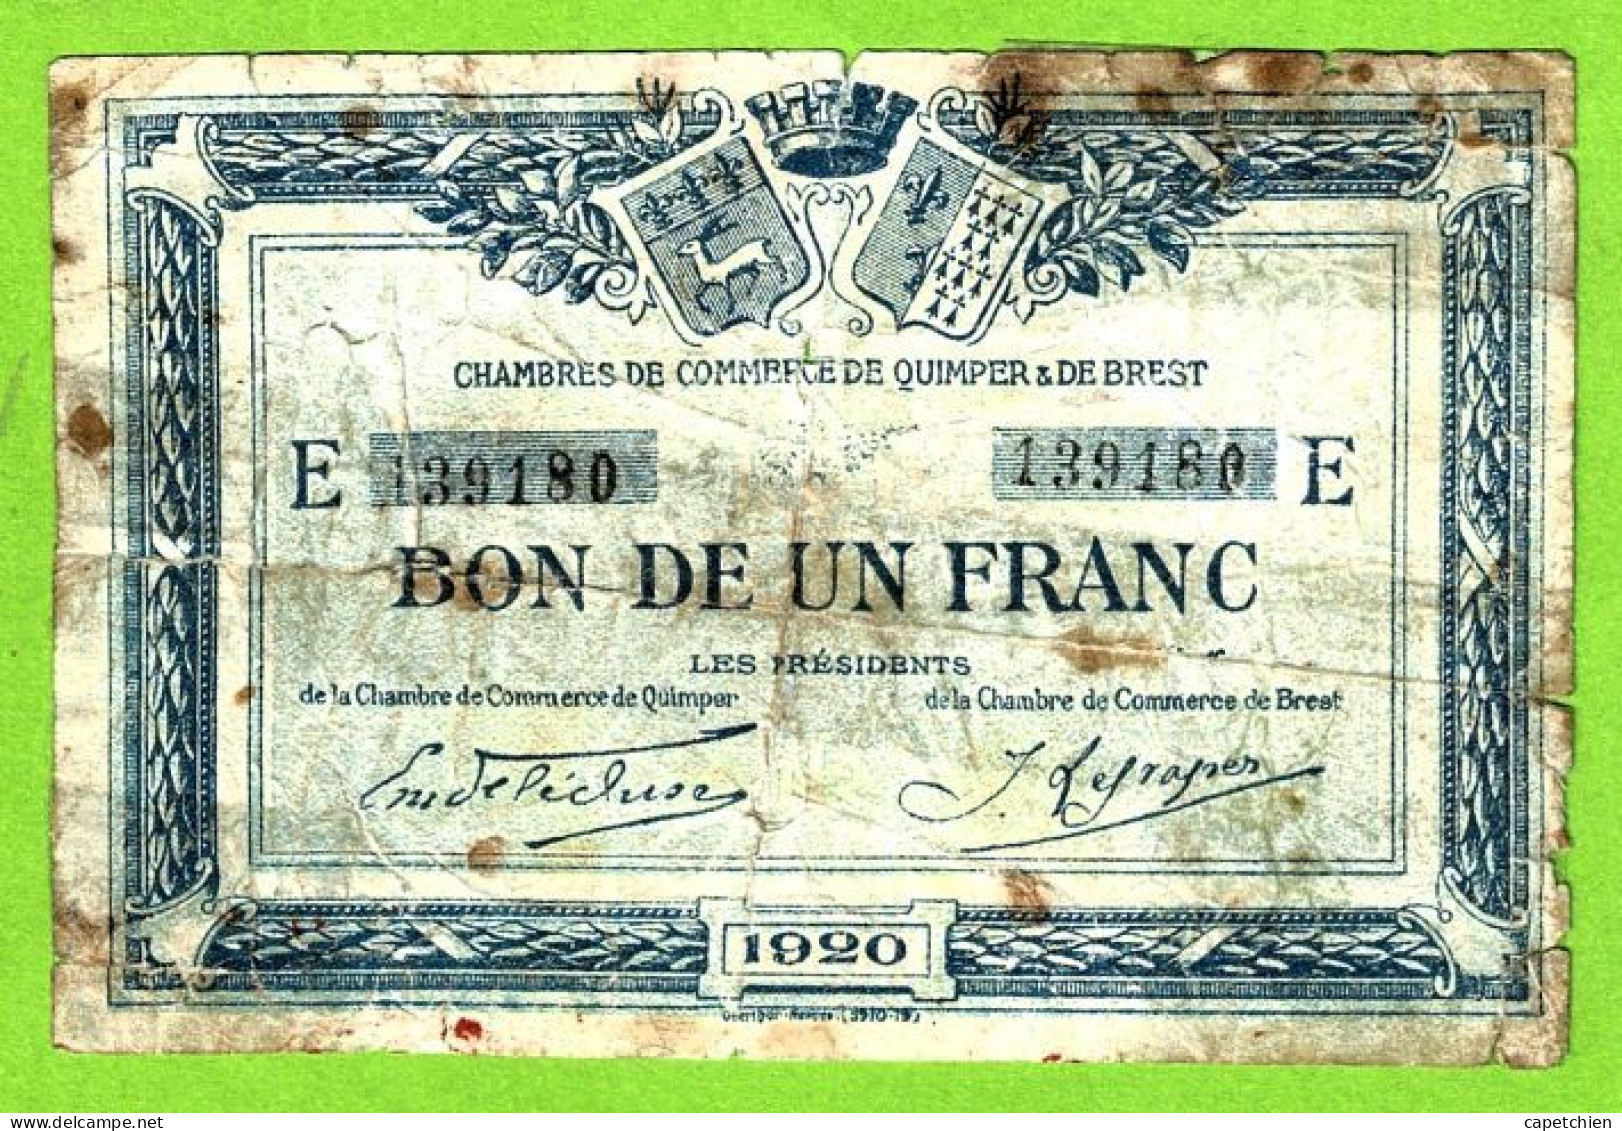 FRANCE/ CHAMBRES DE COMMERCE QUIMPER & BREST/ BON De 1 FRANC / 1920 / 139180 / SERIE E - Chambre De Commerce